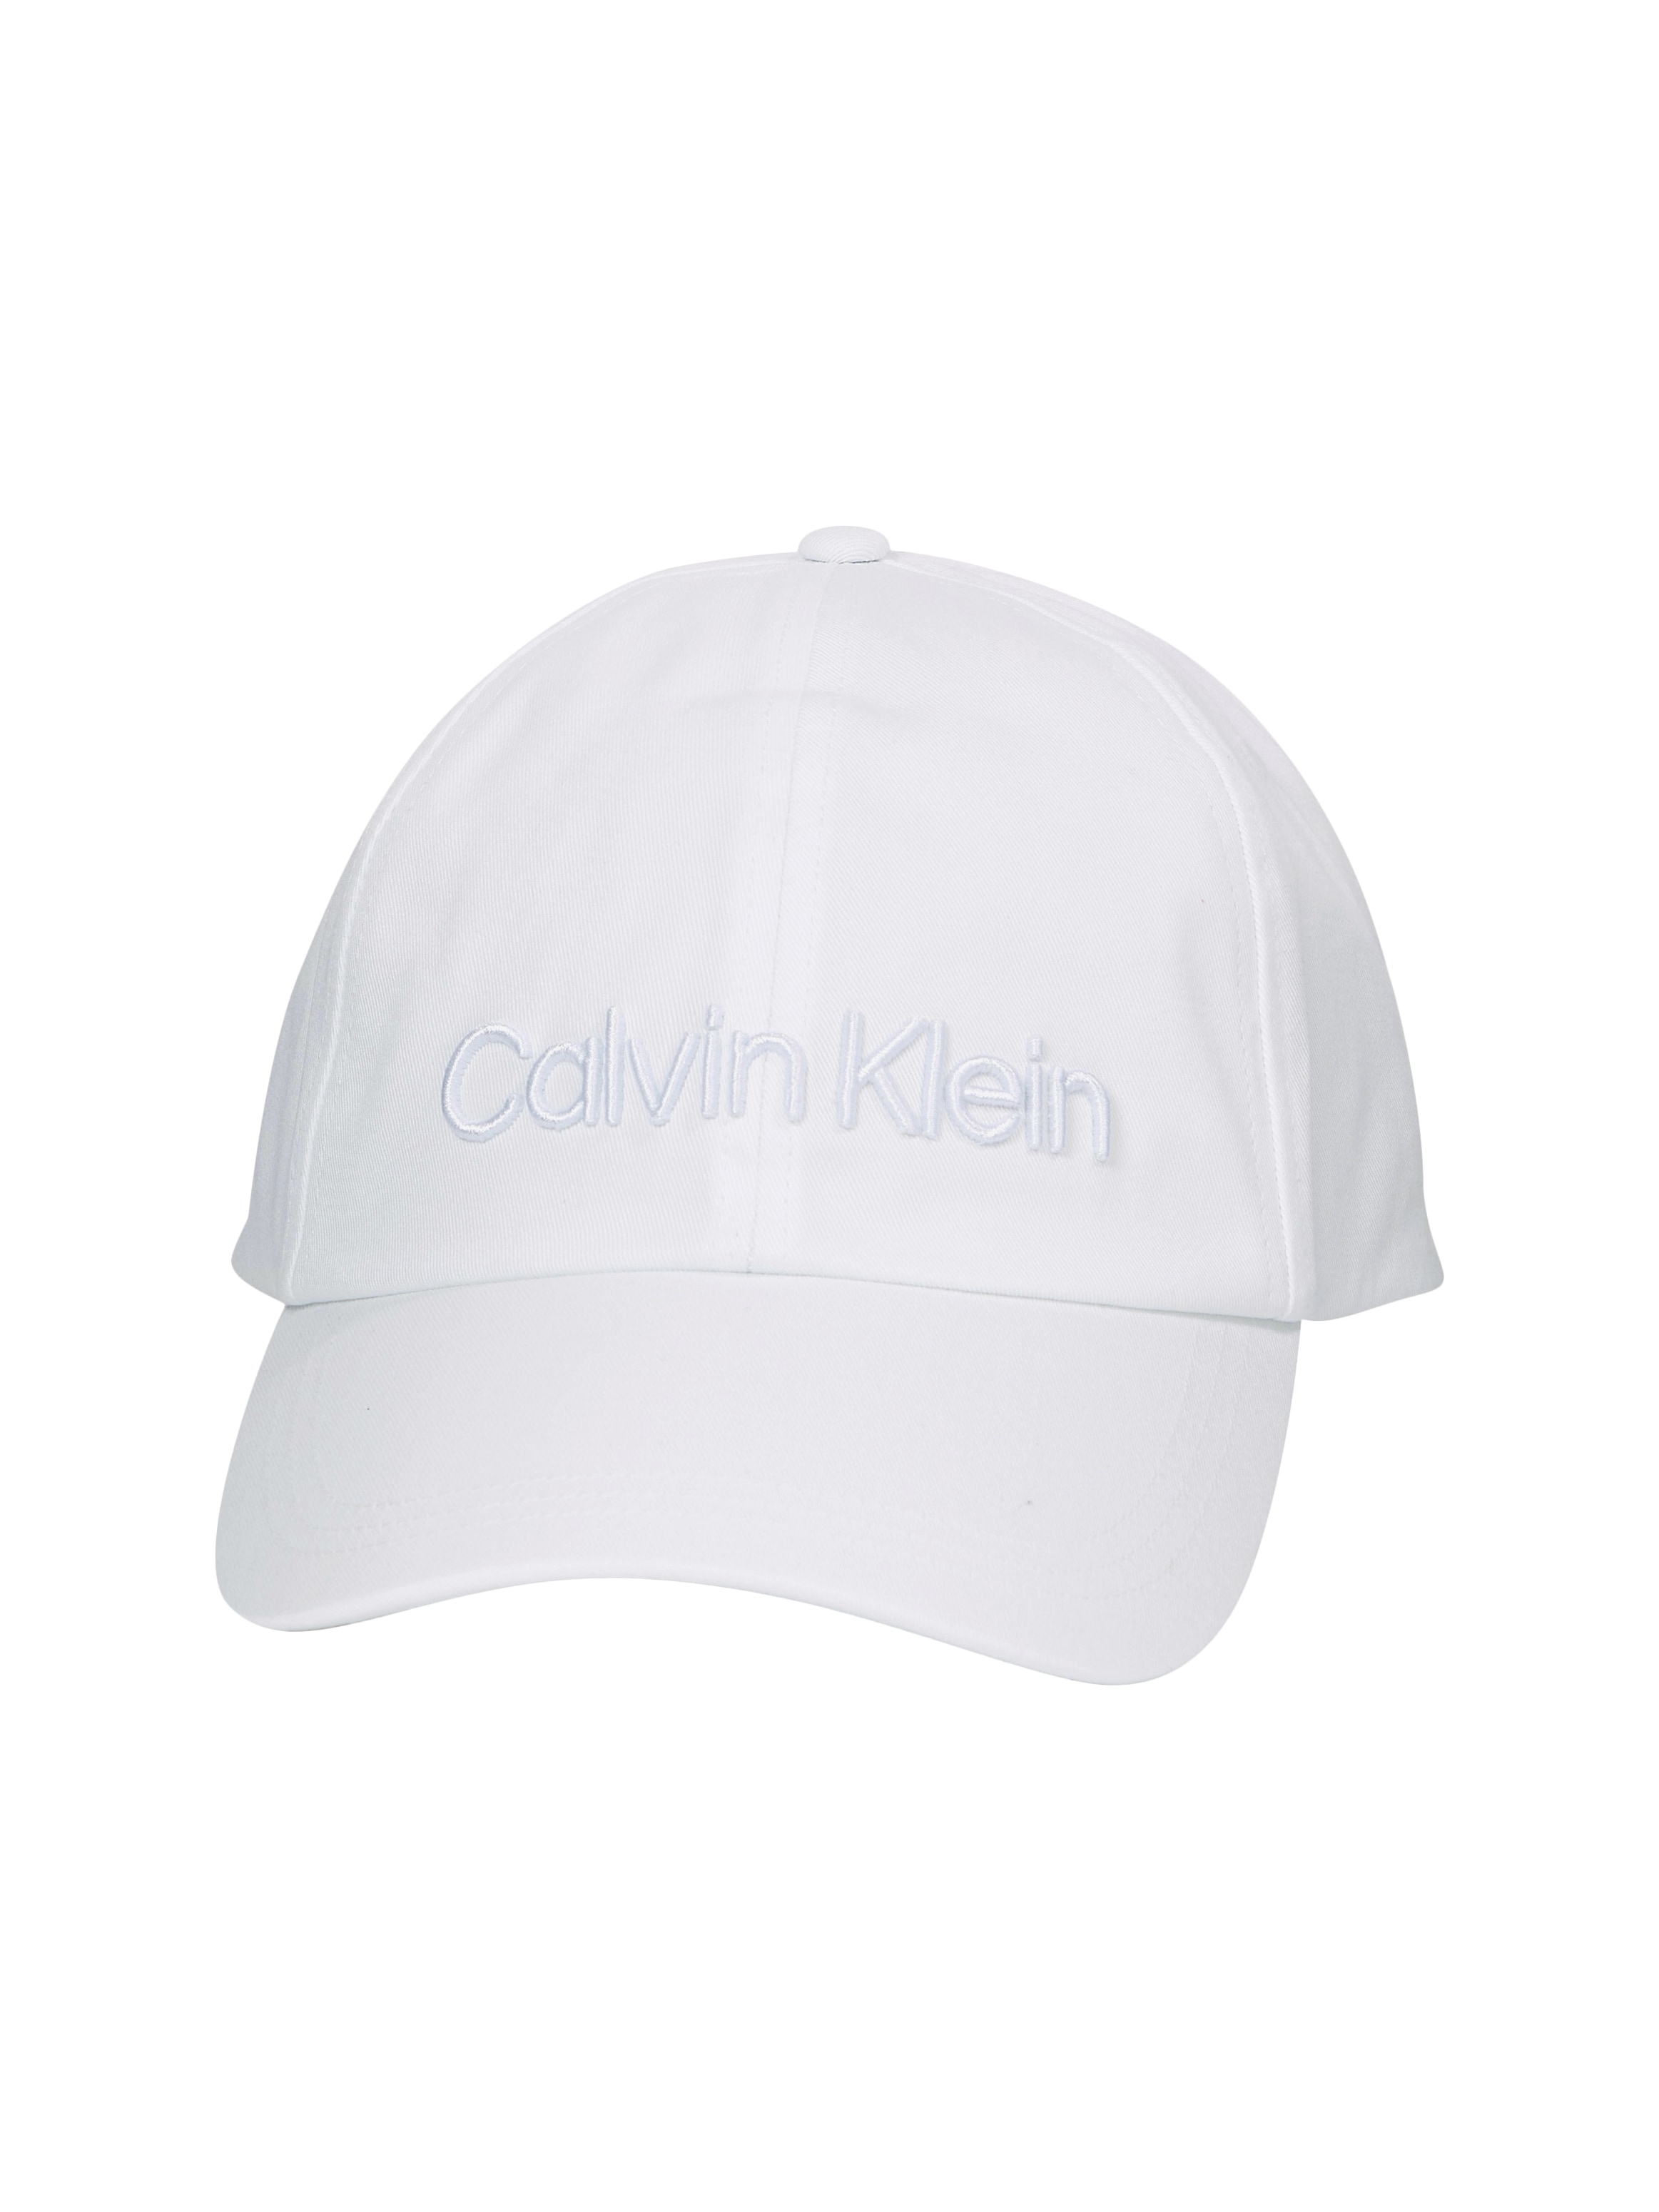 EMBROIDERY | Baseball UNIVERSAL »CALVIN BB Cap Klein CAP« bestellen Calvin